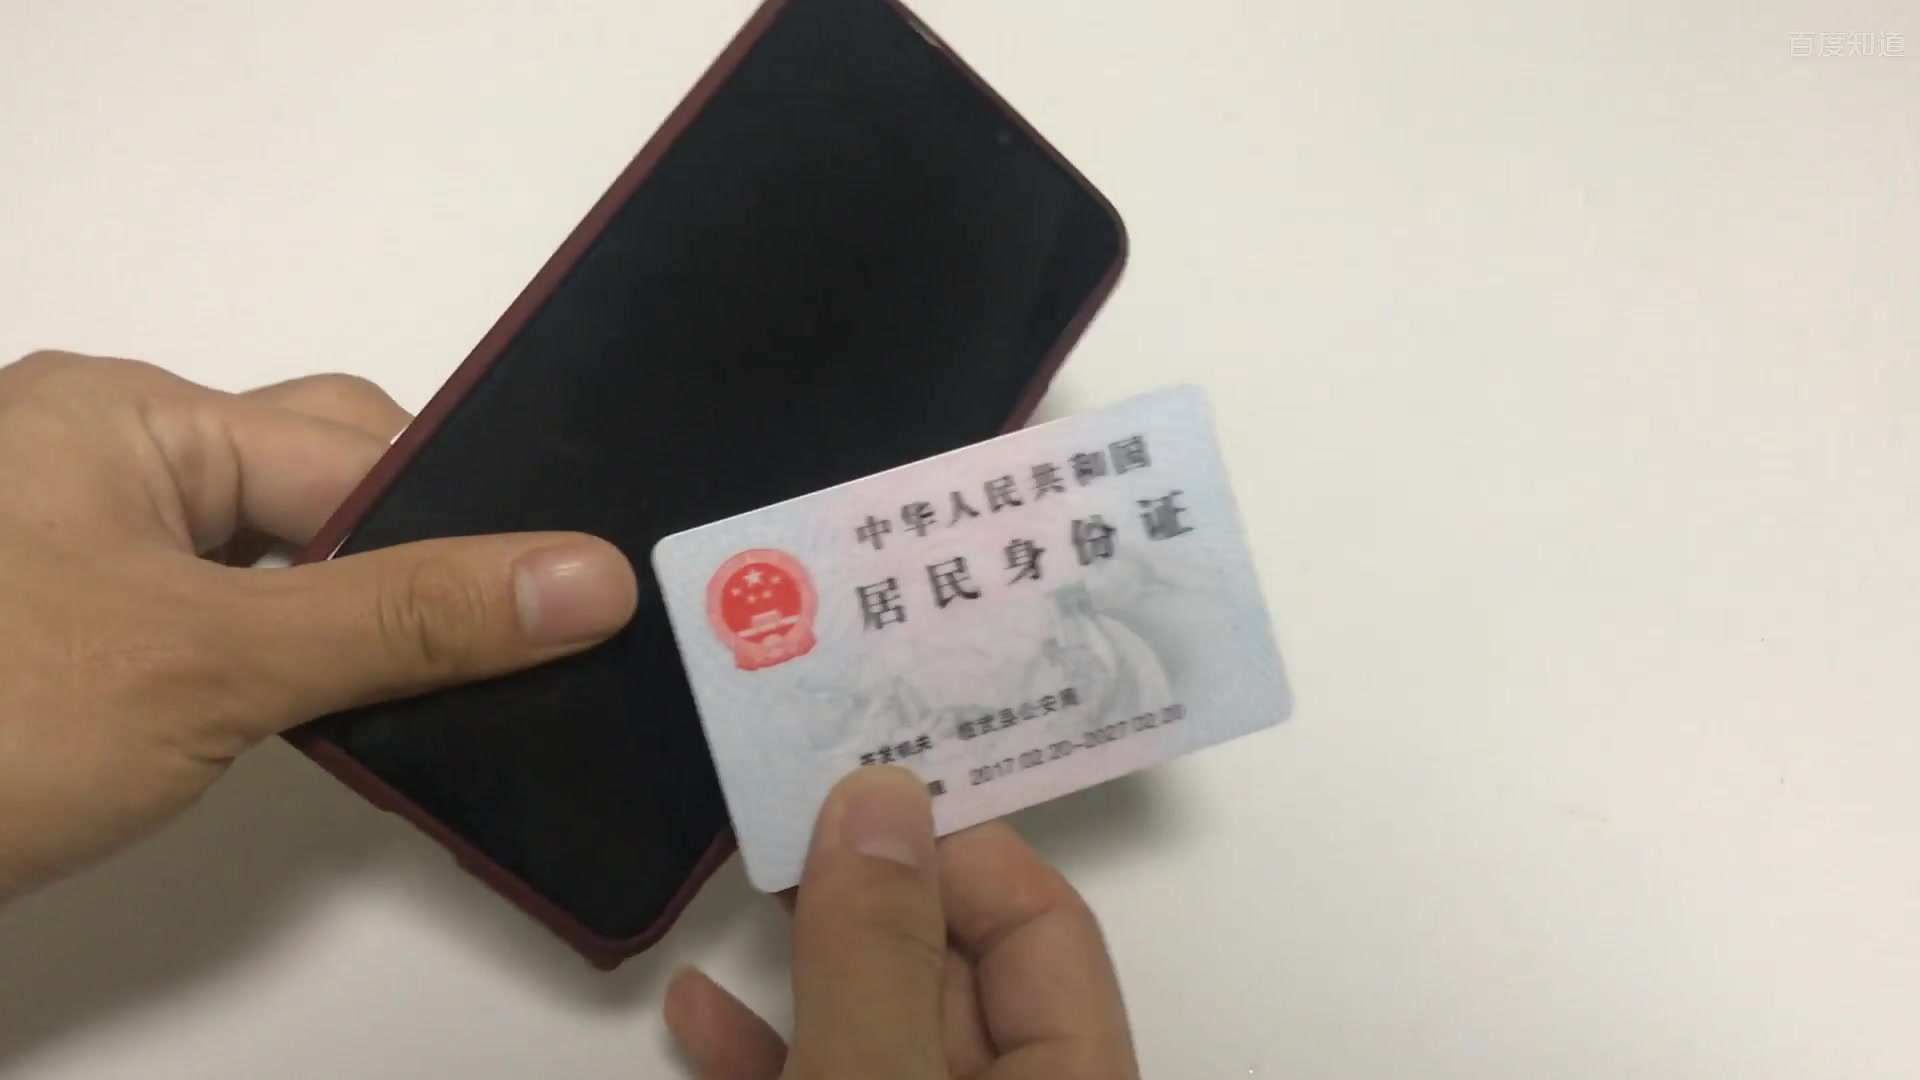 郑州一公司积压近万张身份证无人认领[组图]_图片中国_中国网